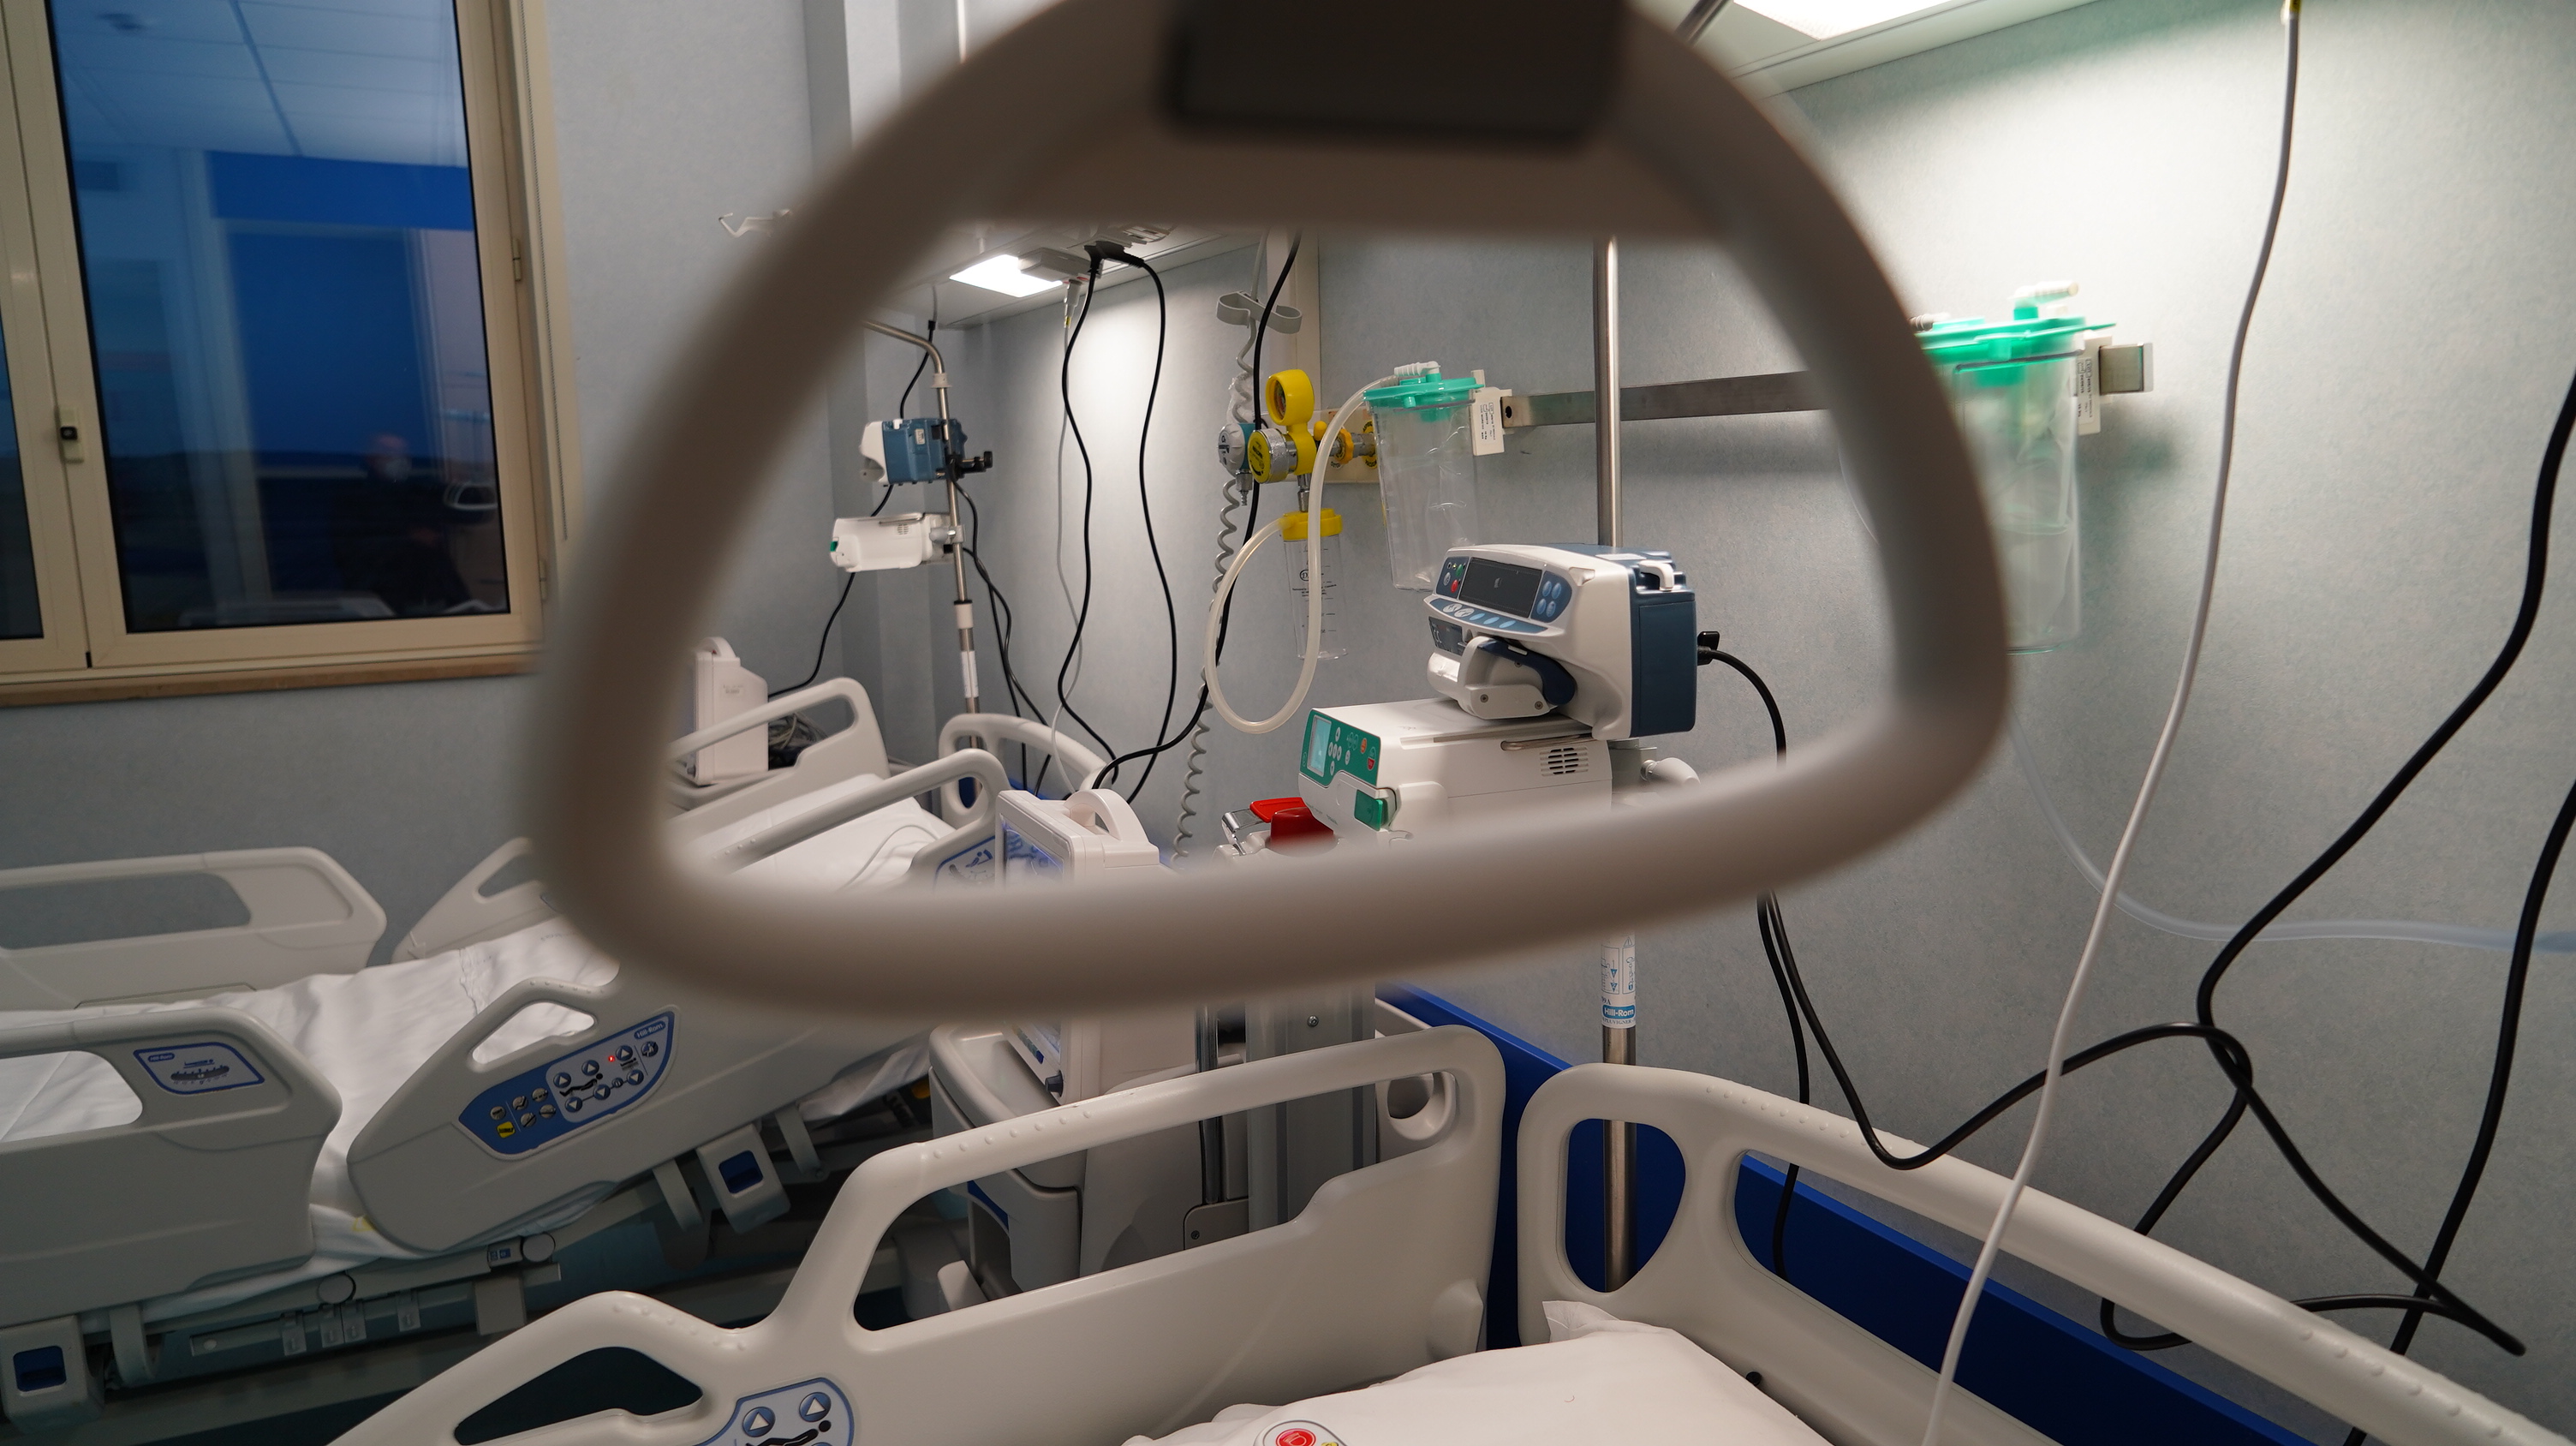 Galleria Apre il reparto Covid dell'Ospedale di Altamura: attivati 20 posti letto, ampliabili sino a 60 - Diapositiva 1 di 9